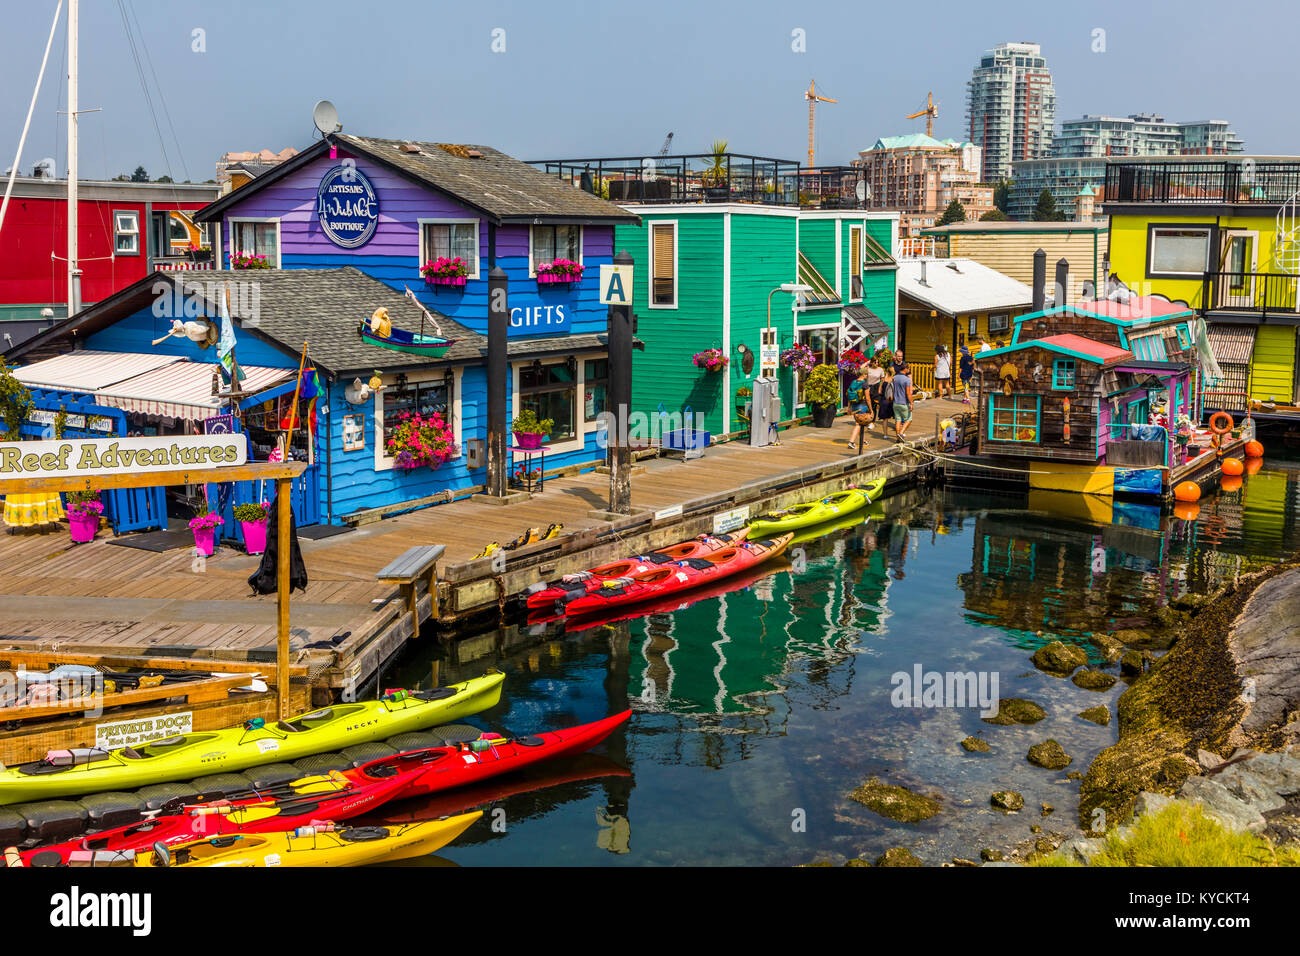 Fisherman's Wharf de Victoria Canada une attraction touristique avec des kiosques de nourriture, de boutiques uniques et de maisons flottantes ou houseboats Banque D'Images